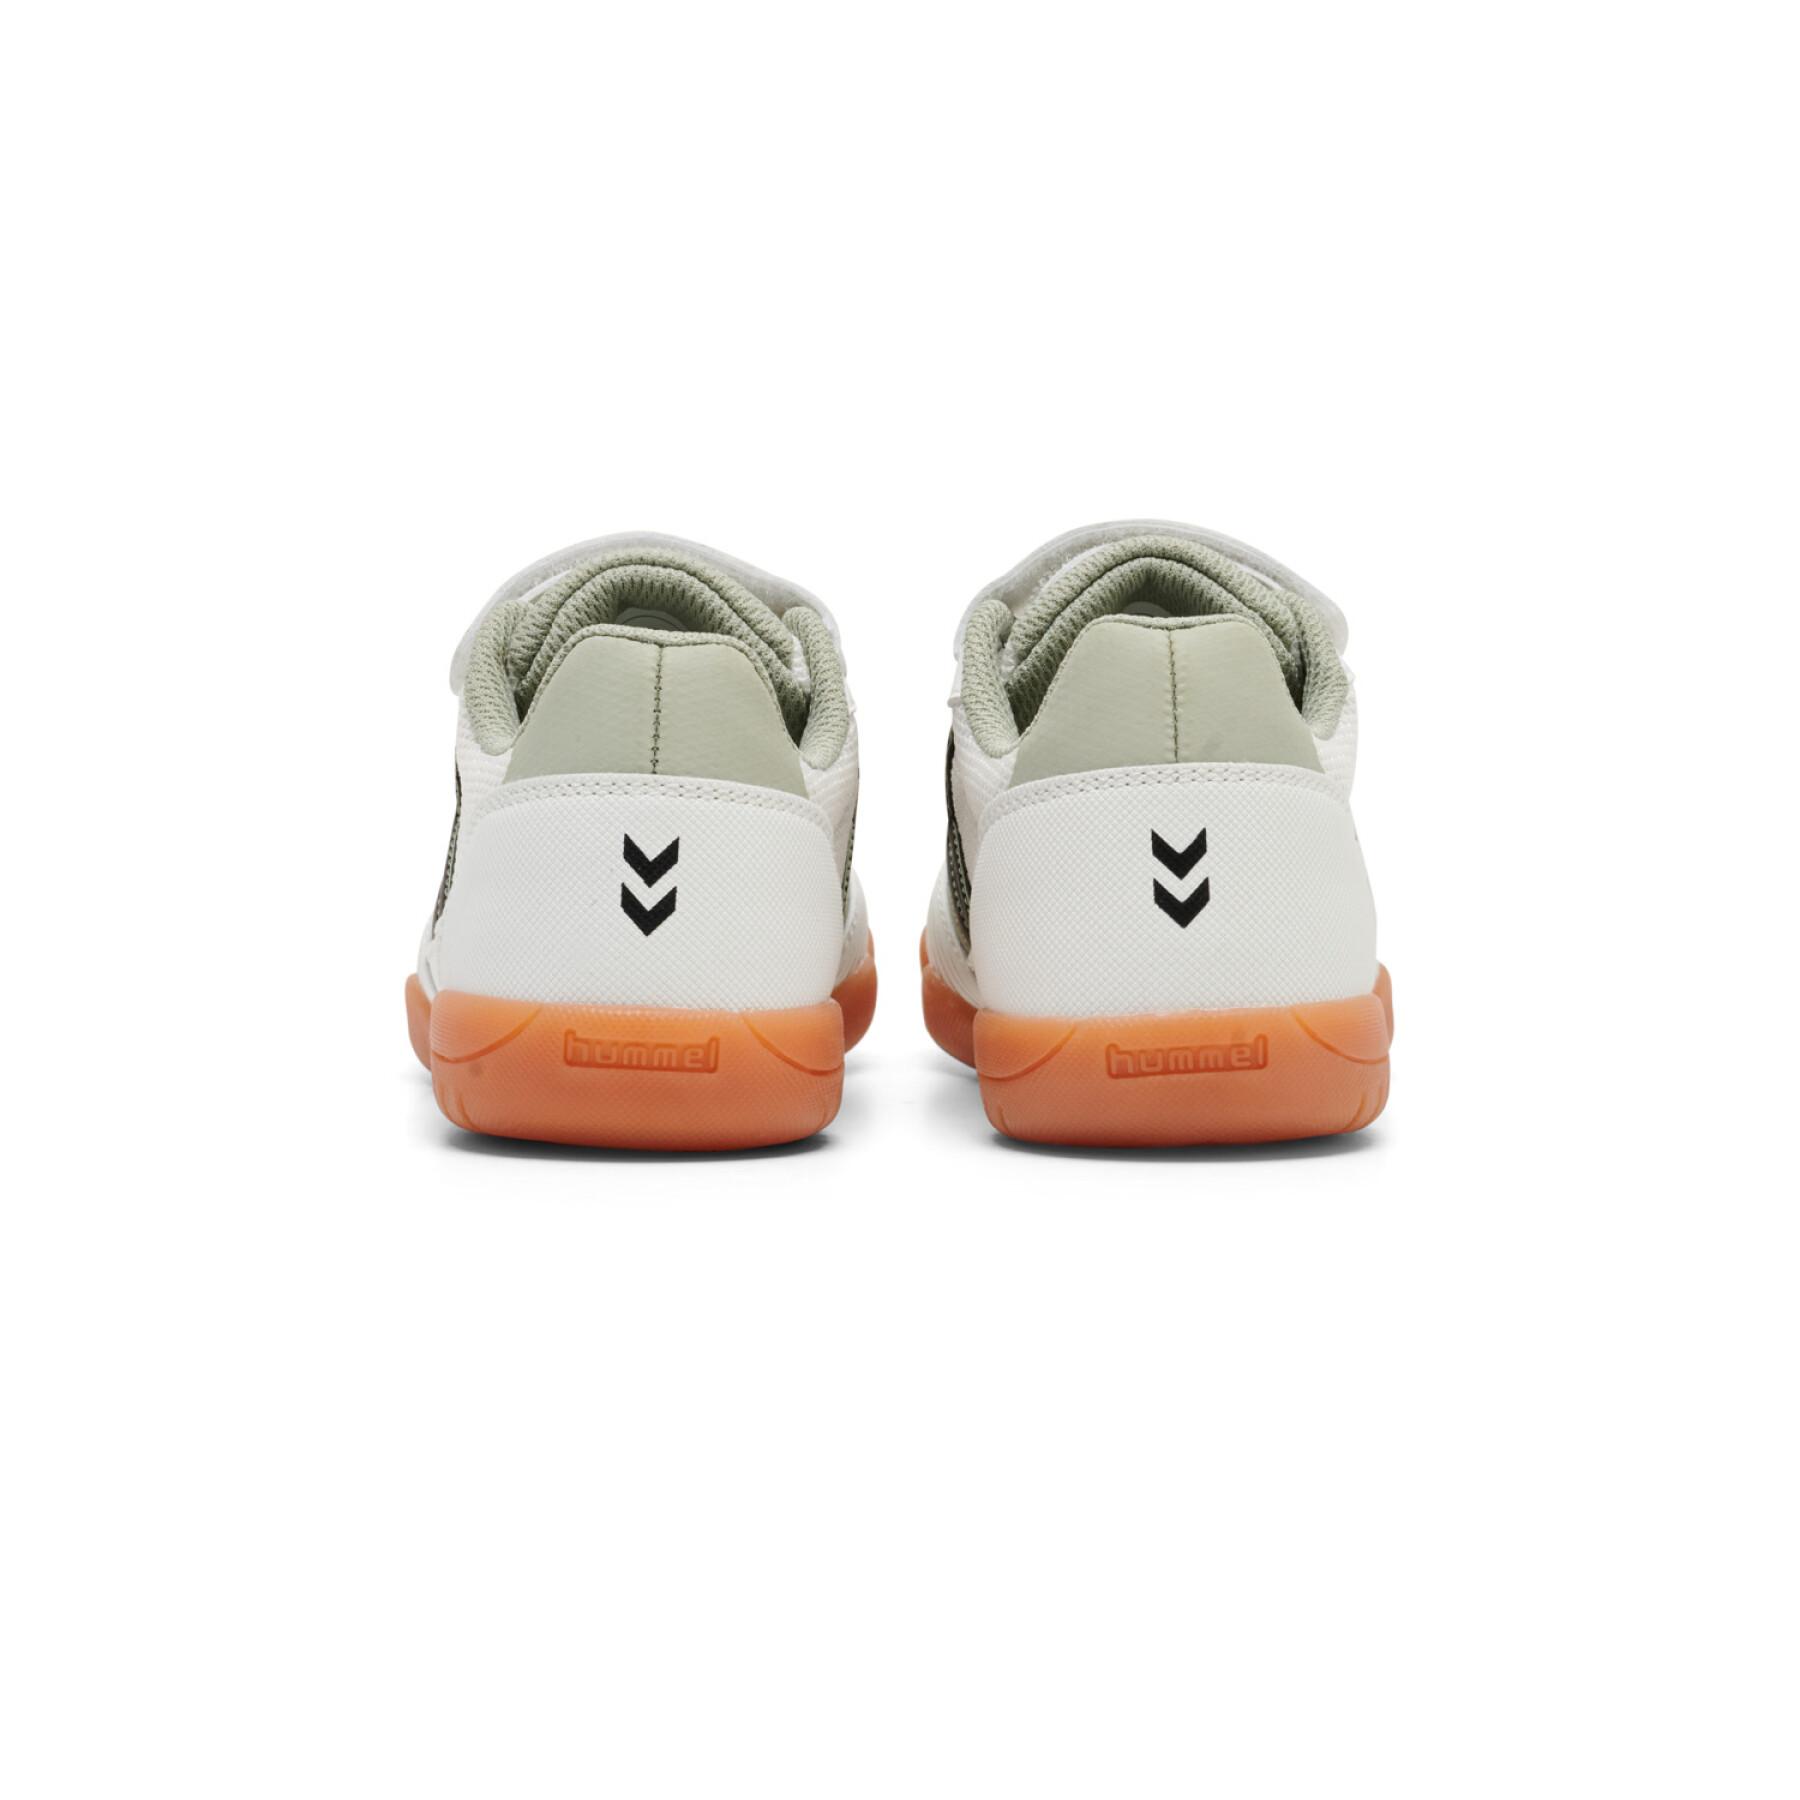 Children's sneakers Hummel Aeroteam III VC